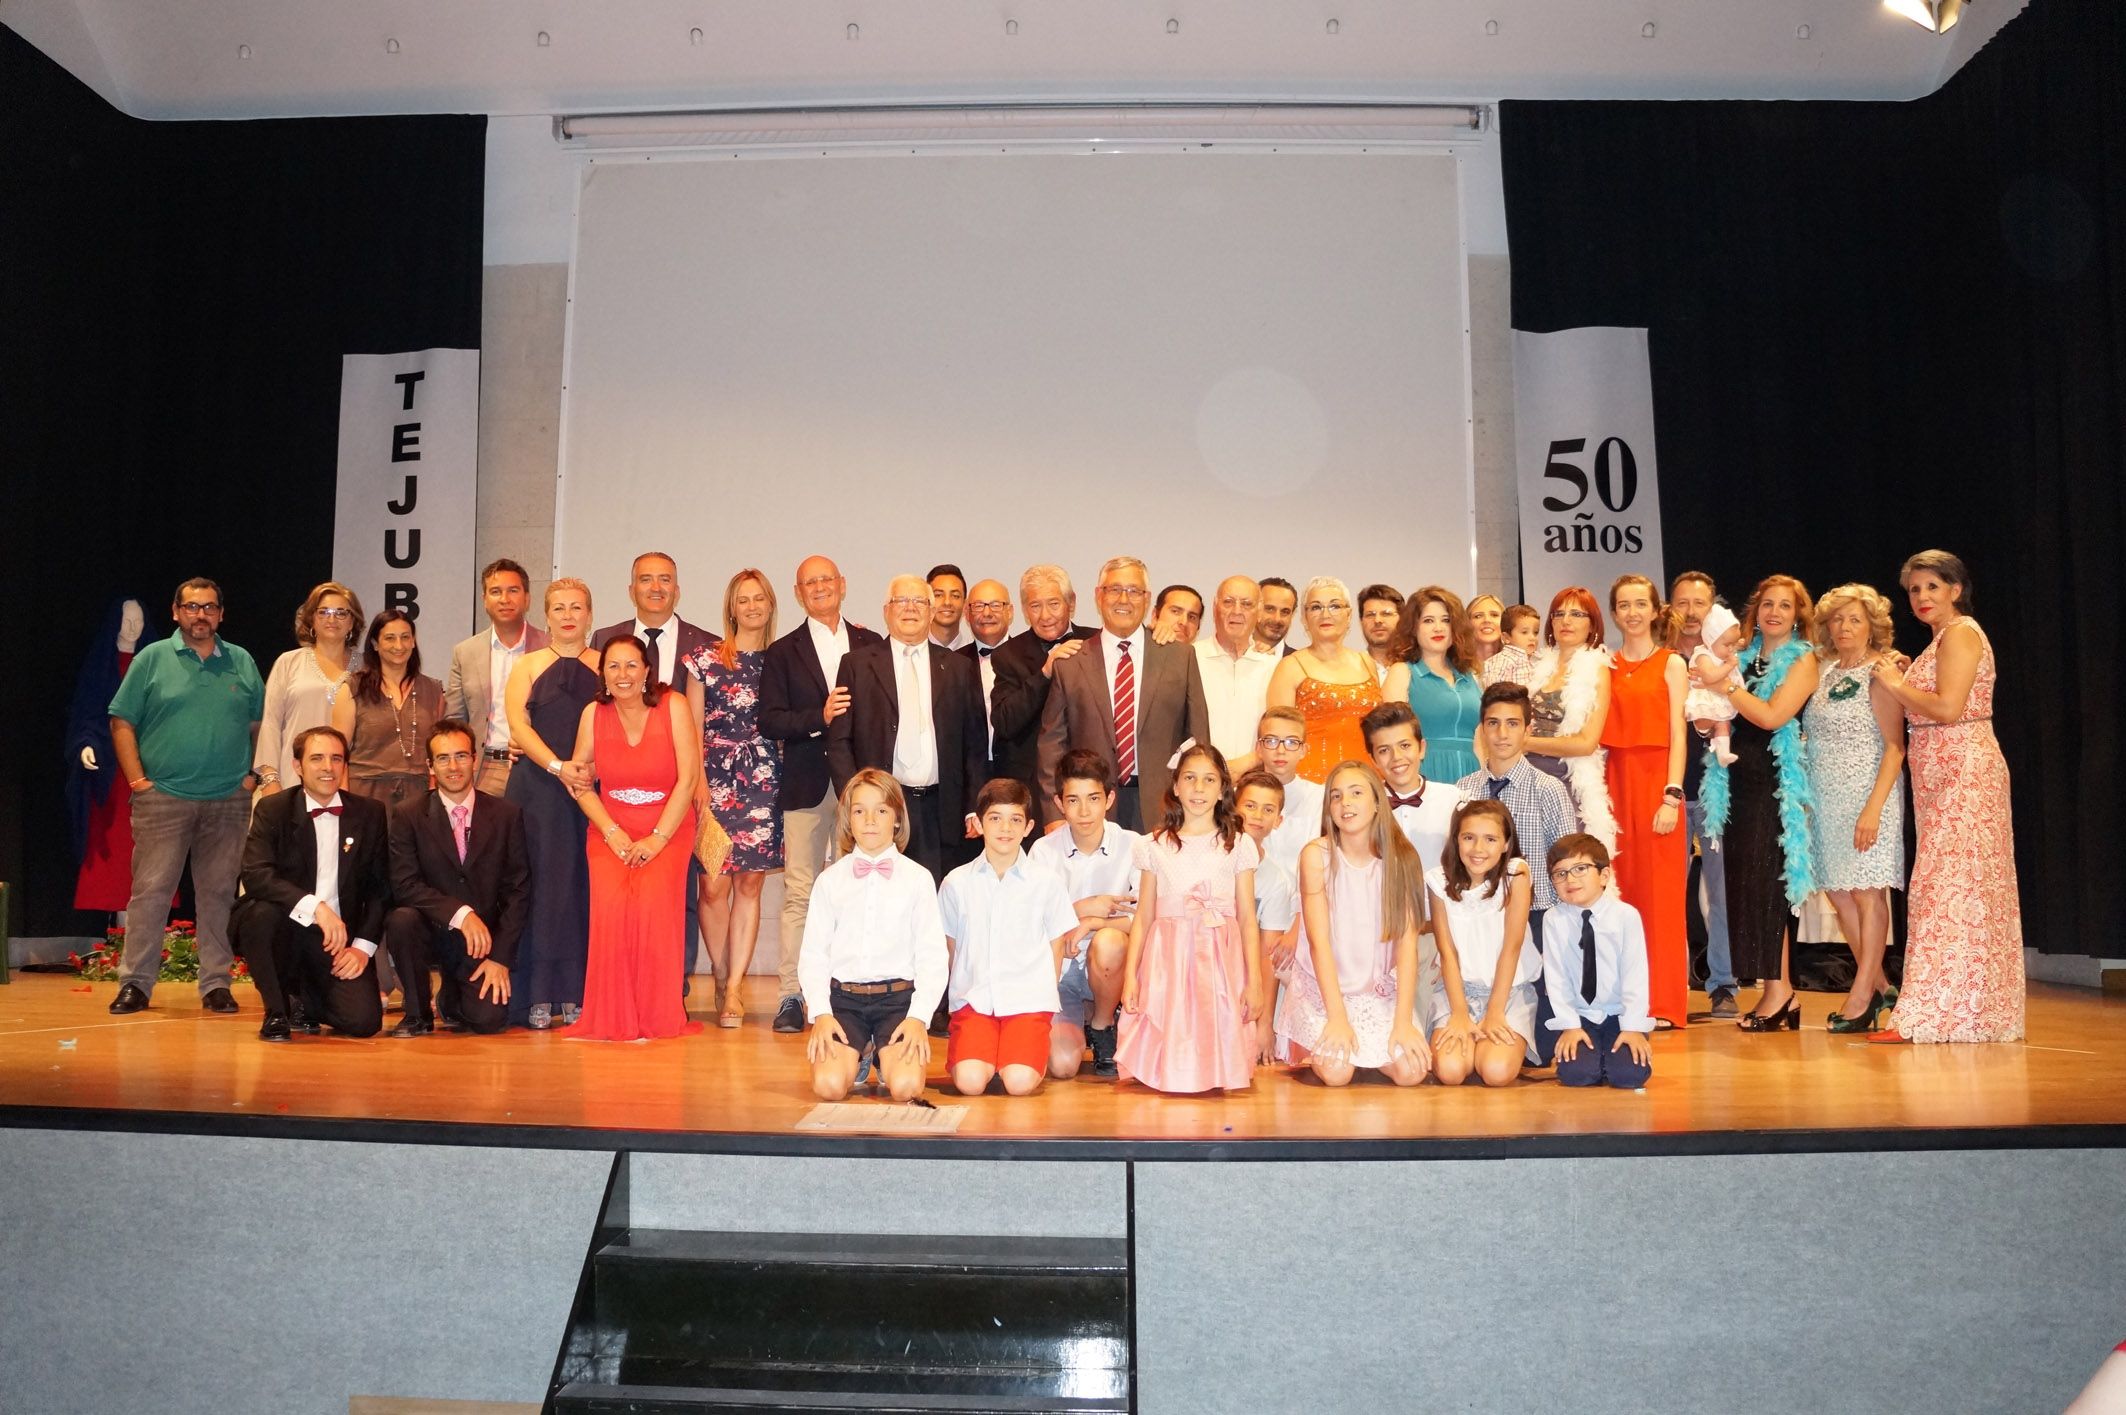 La gala de celebración del 50º aniversario del Tejuba, una gran noche para el recuerdo10